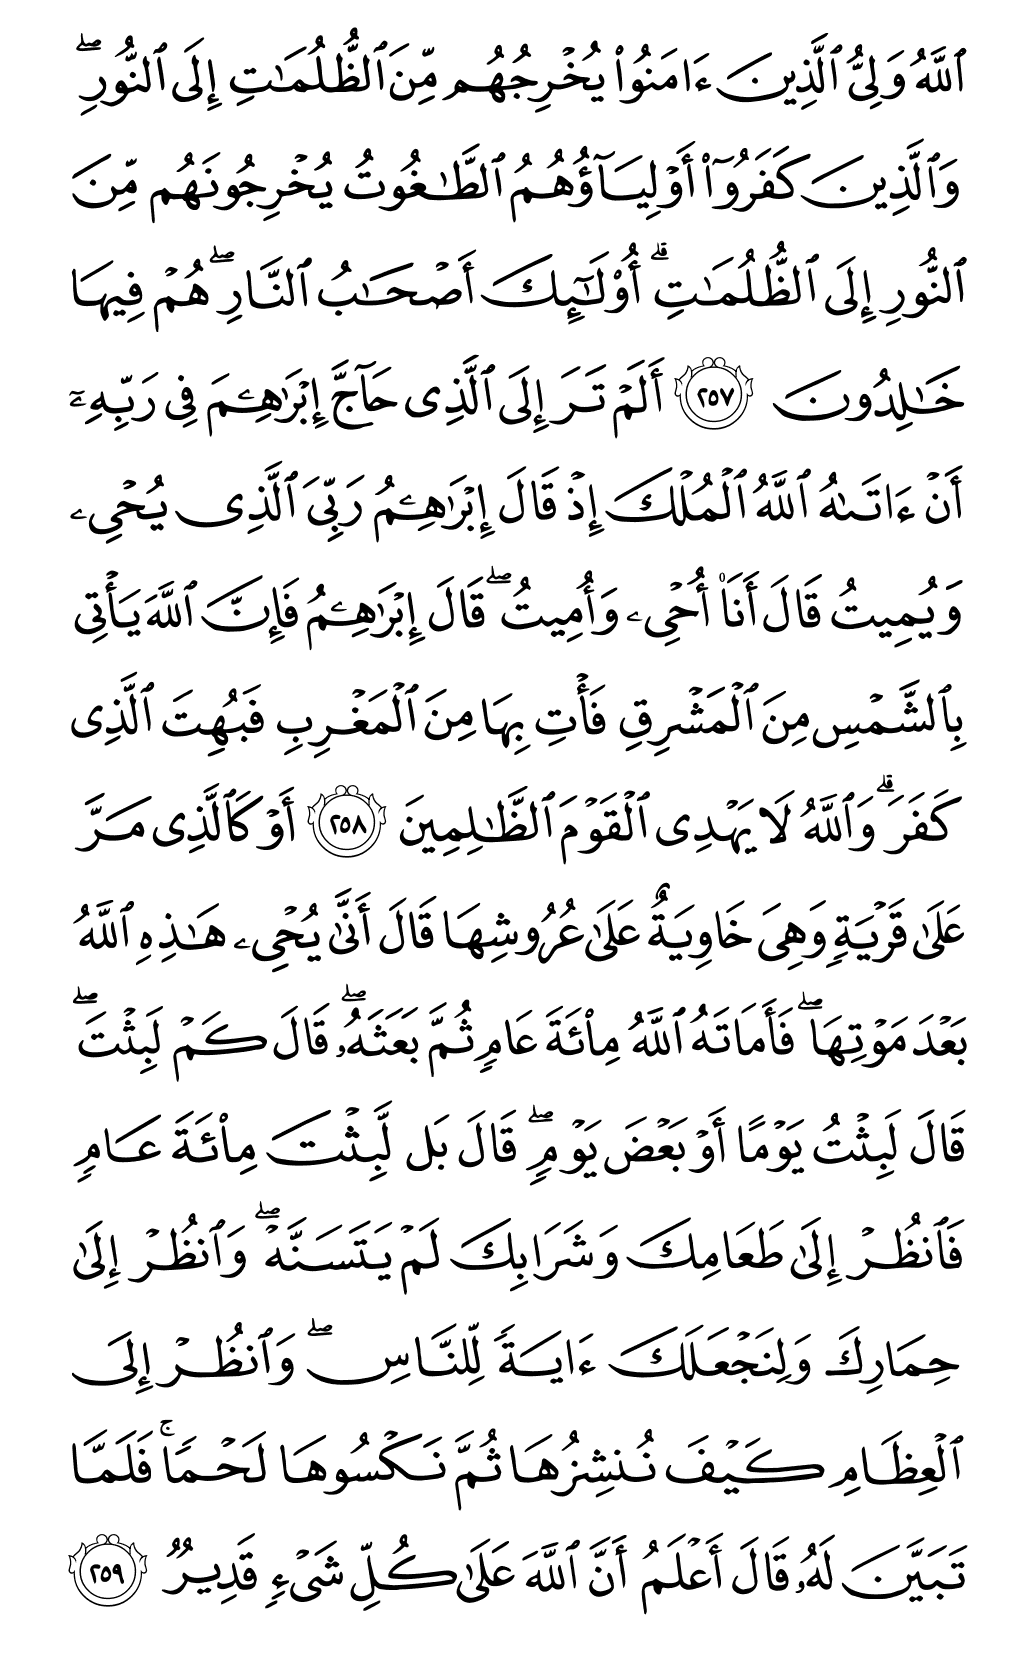 الصفحة رقم 43 من القرآن الكريم